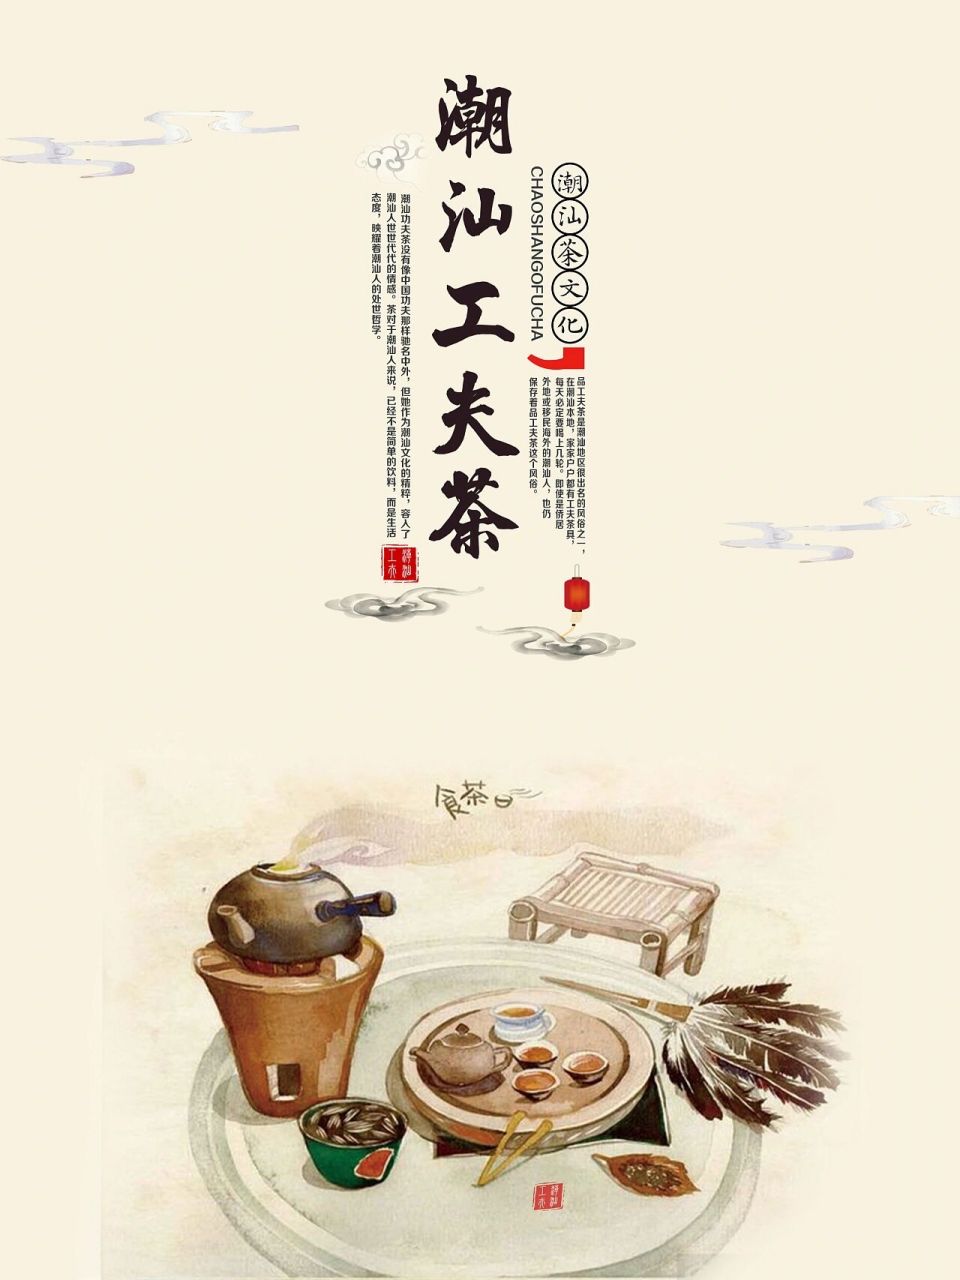 潮汕功夫茶 潮州工夫茶艺,别称潮汕工夫茶,是广东省潮汕地区一带特有